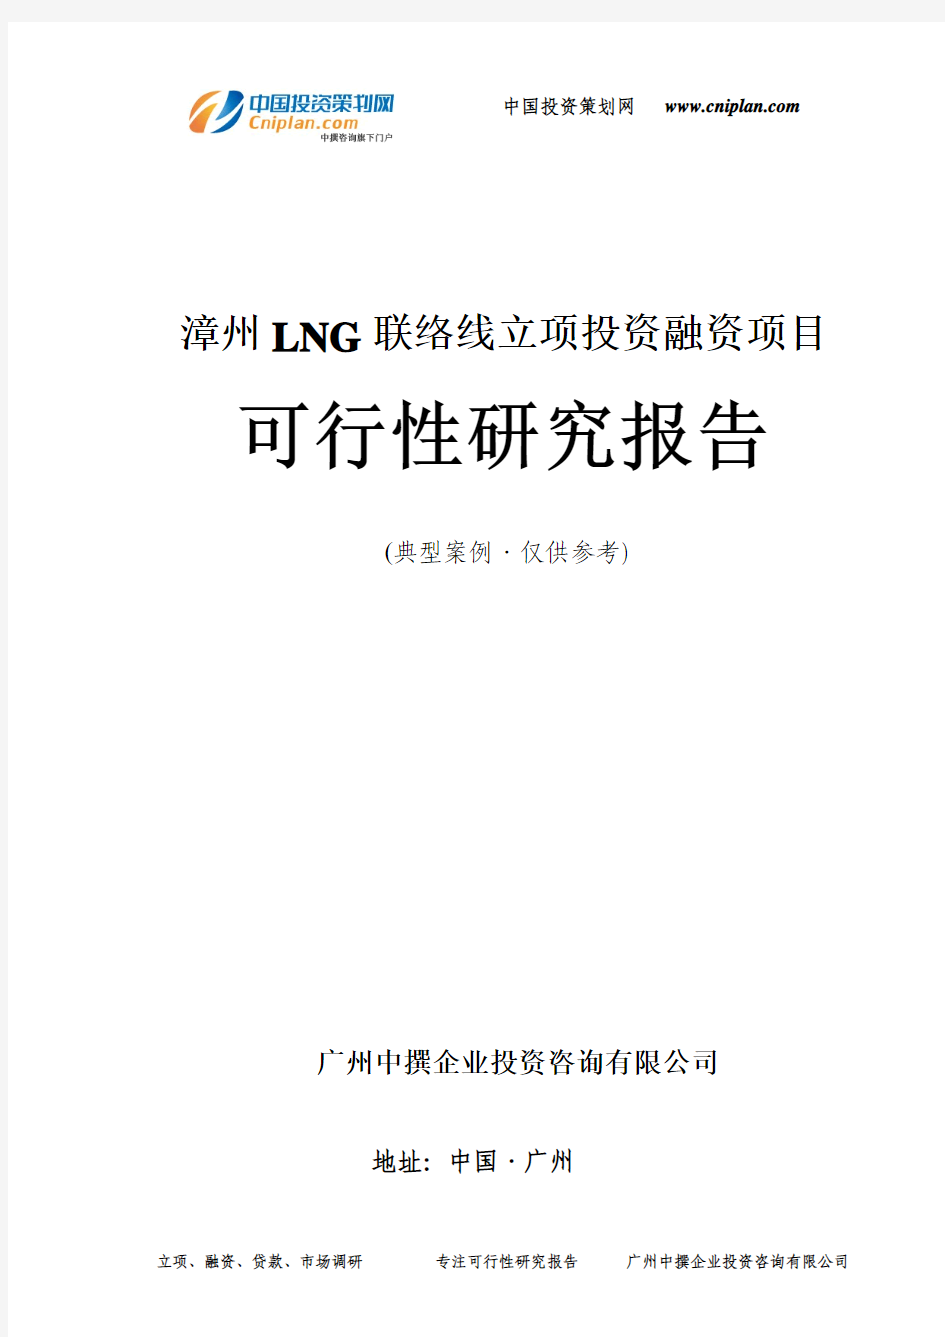 漳州LNG联络线融资投资立项项目可行性研究报告(中撰咨询)